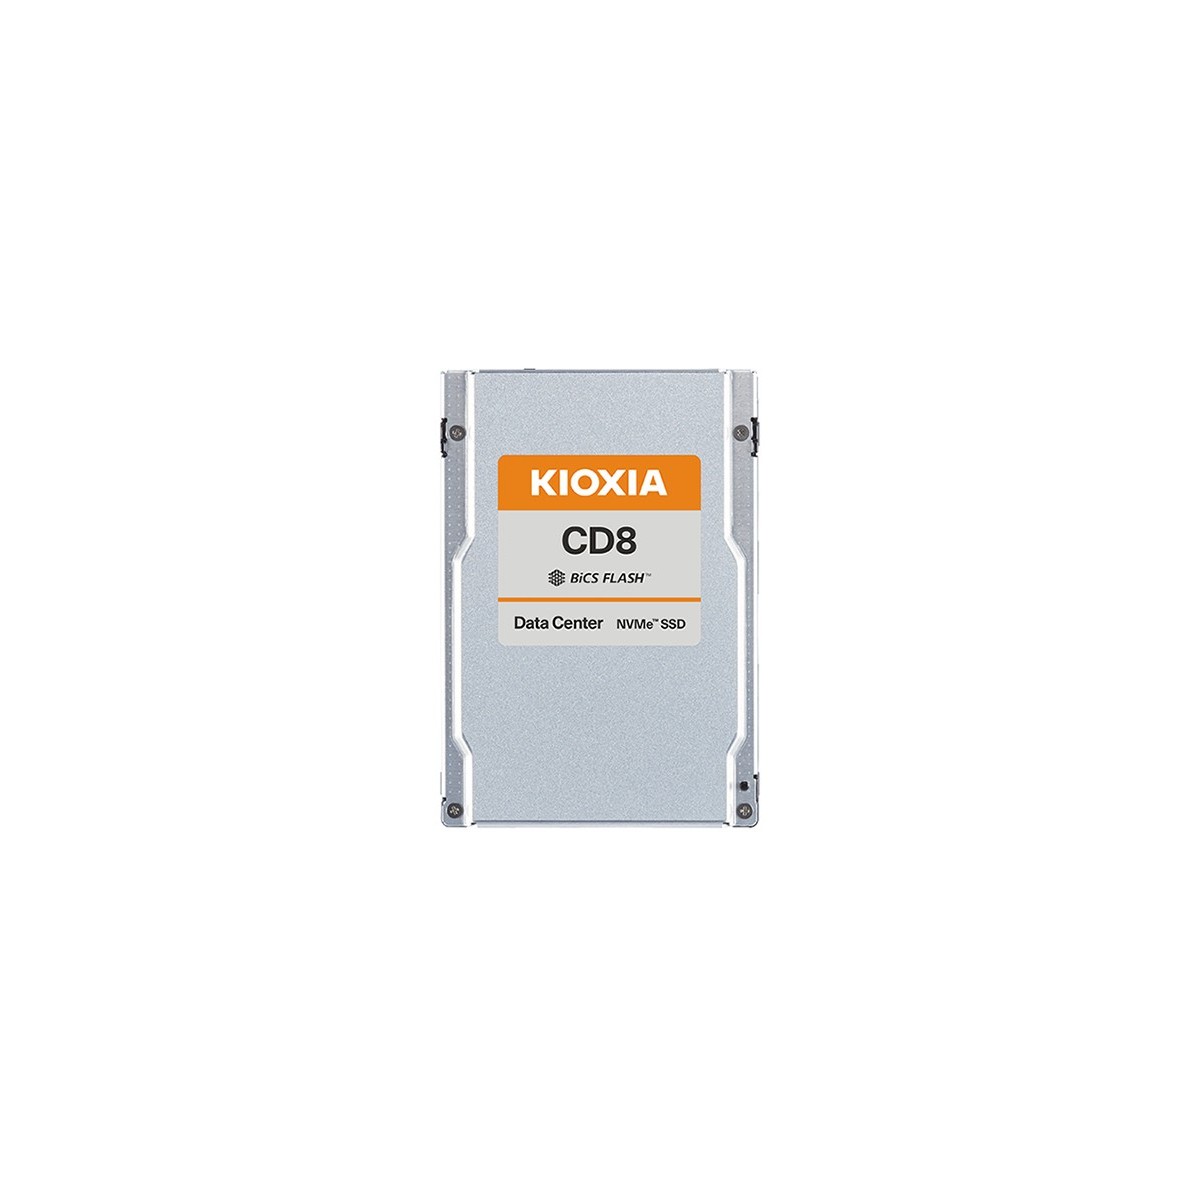 Kioxia X134 CD8-V dSDD 1.6TB PCIe U.2 15mm - Solid State Disk - 1,600 GB